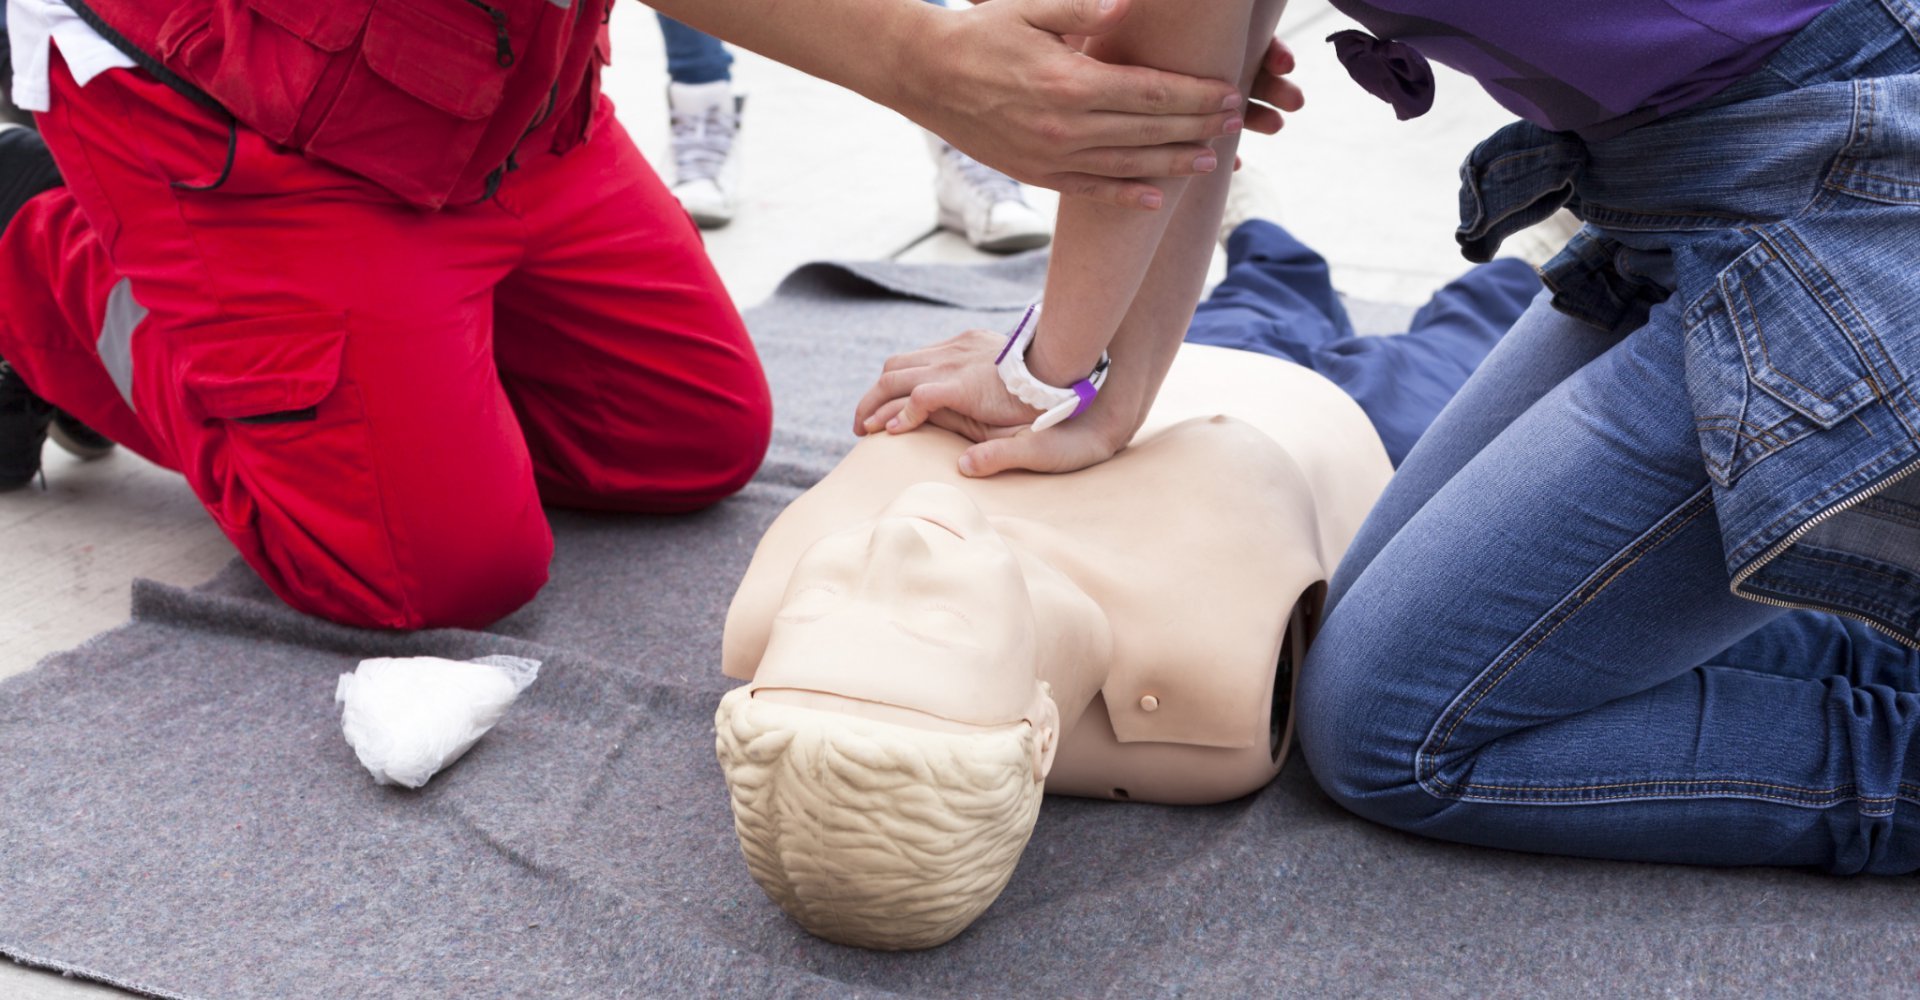 first aid trainer resuscitating mannequin